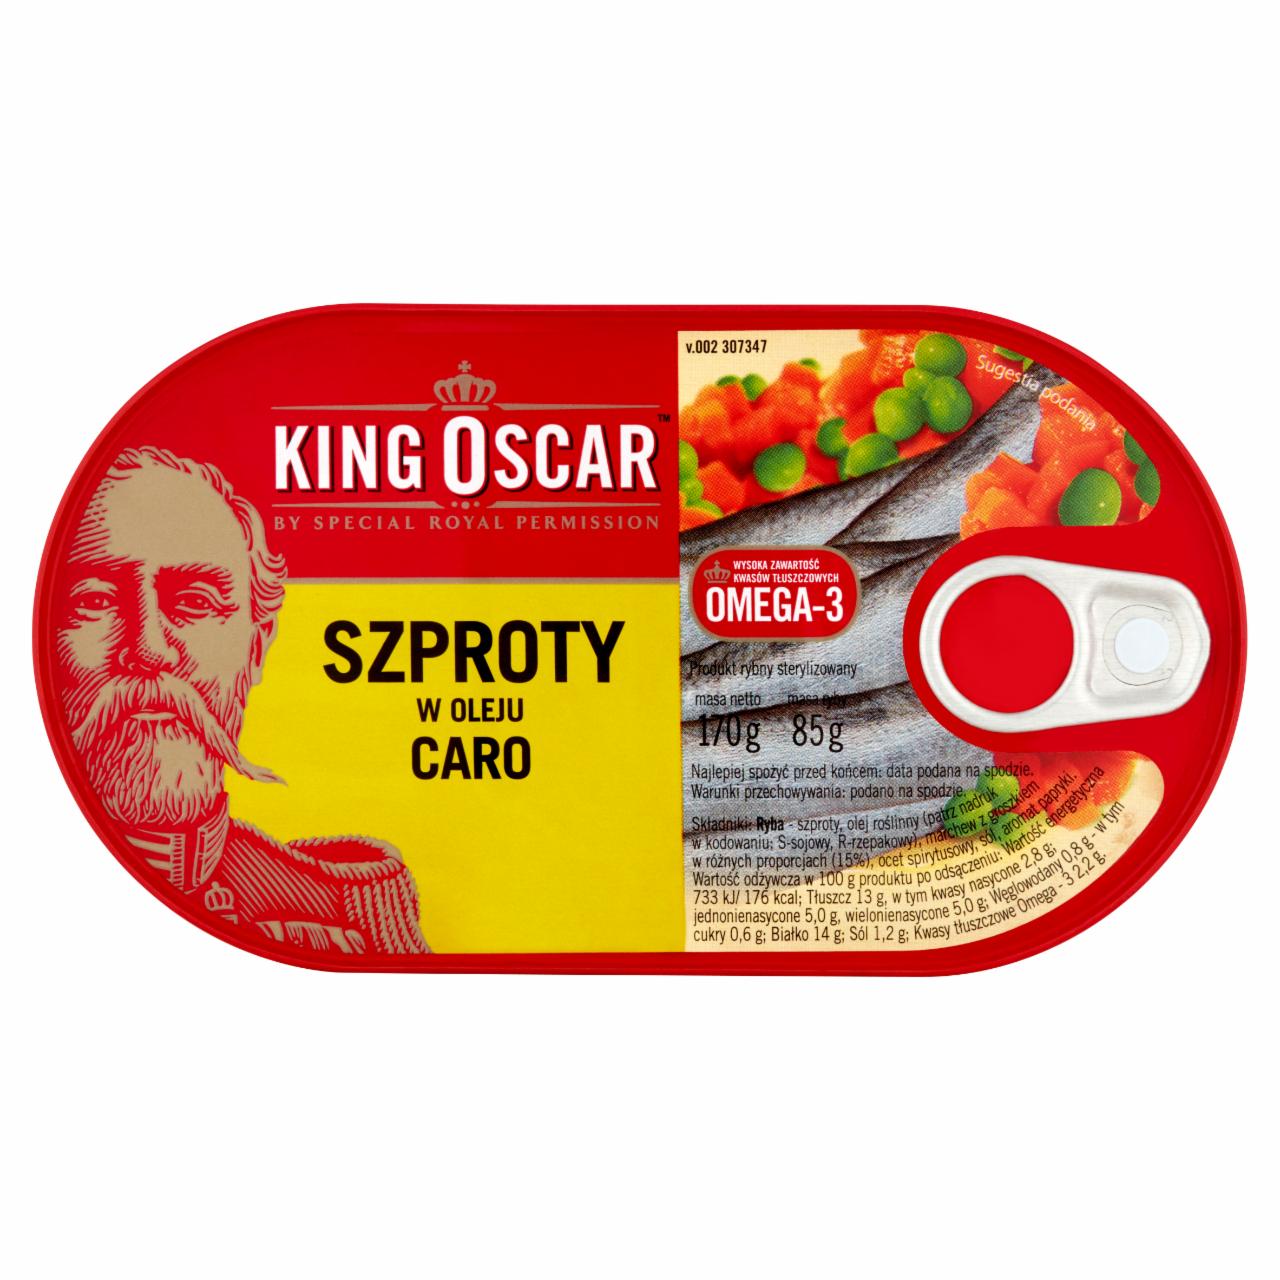 Zdjęcia - King Oscar Szproty w oleju Caro 170 g